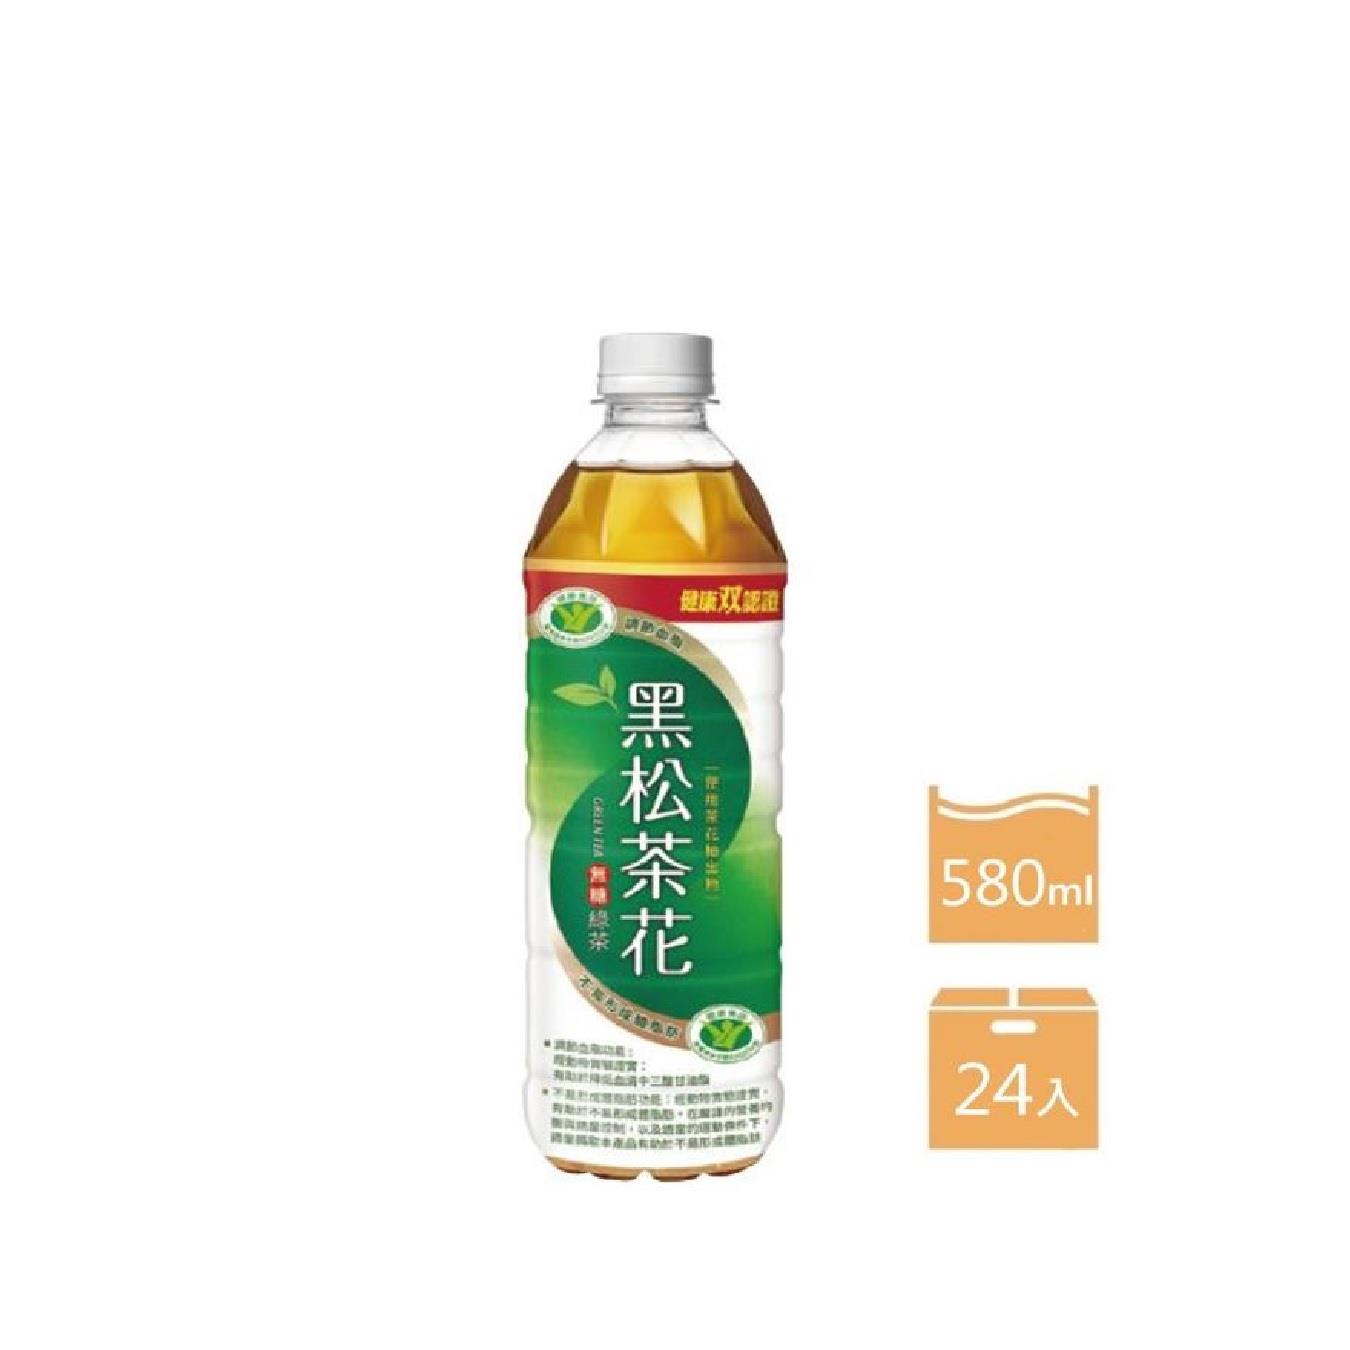 【黑松】箱購黑松茶花綠茶(580mlx24)